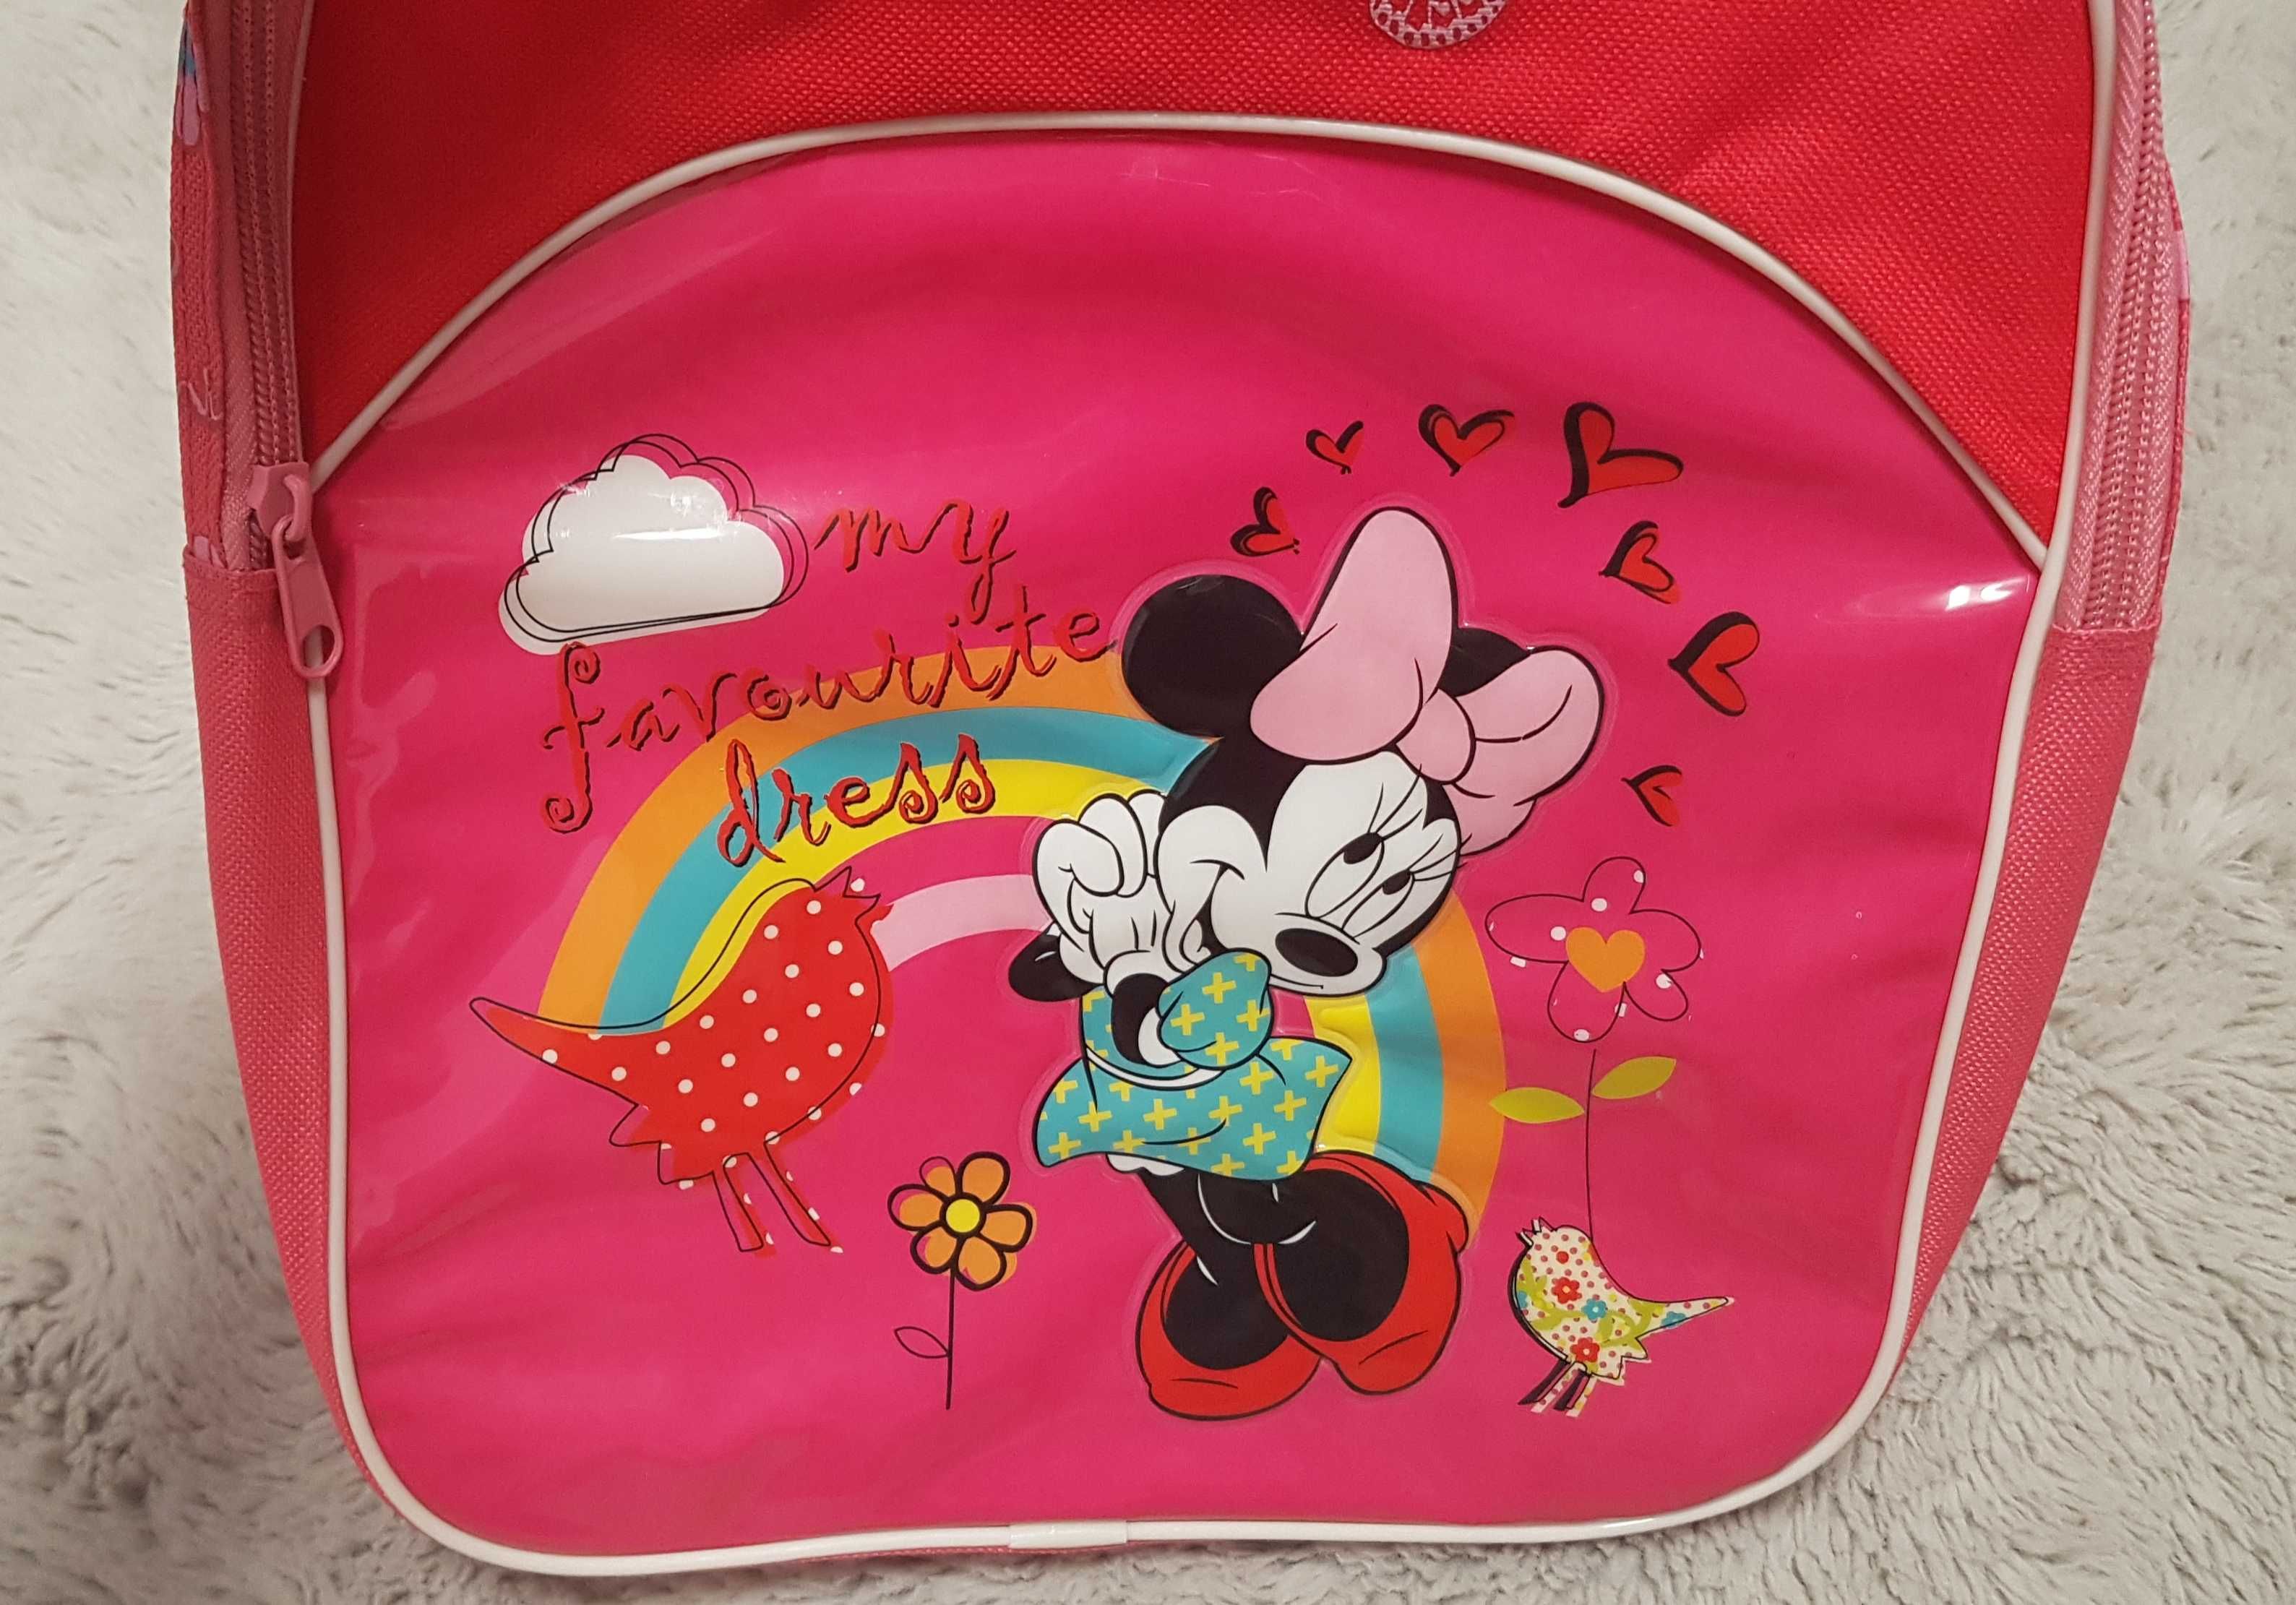 Plecak Minnie Mouse, czerwony, jednokomorowy, do przedszkola